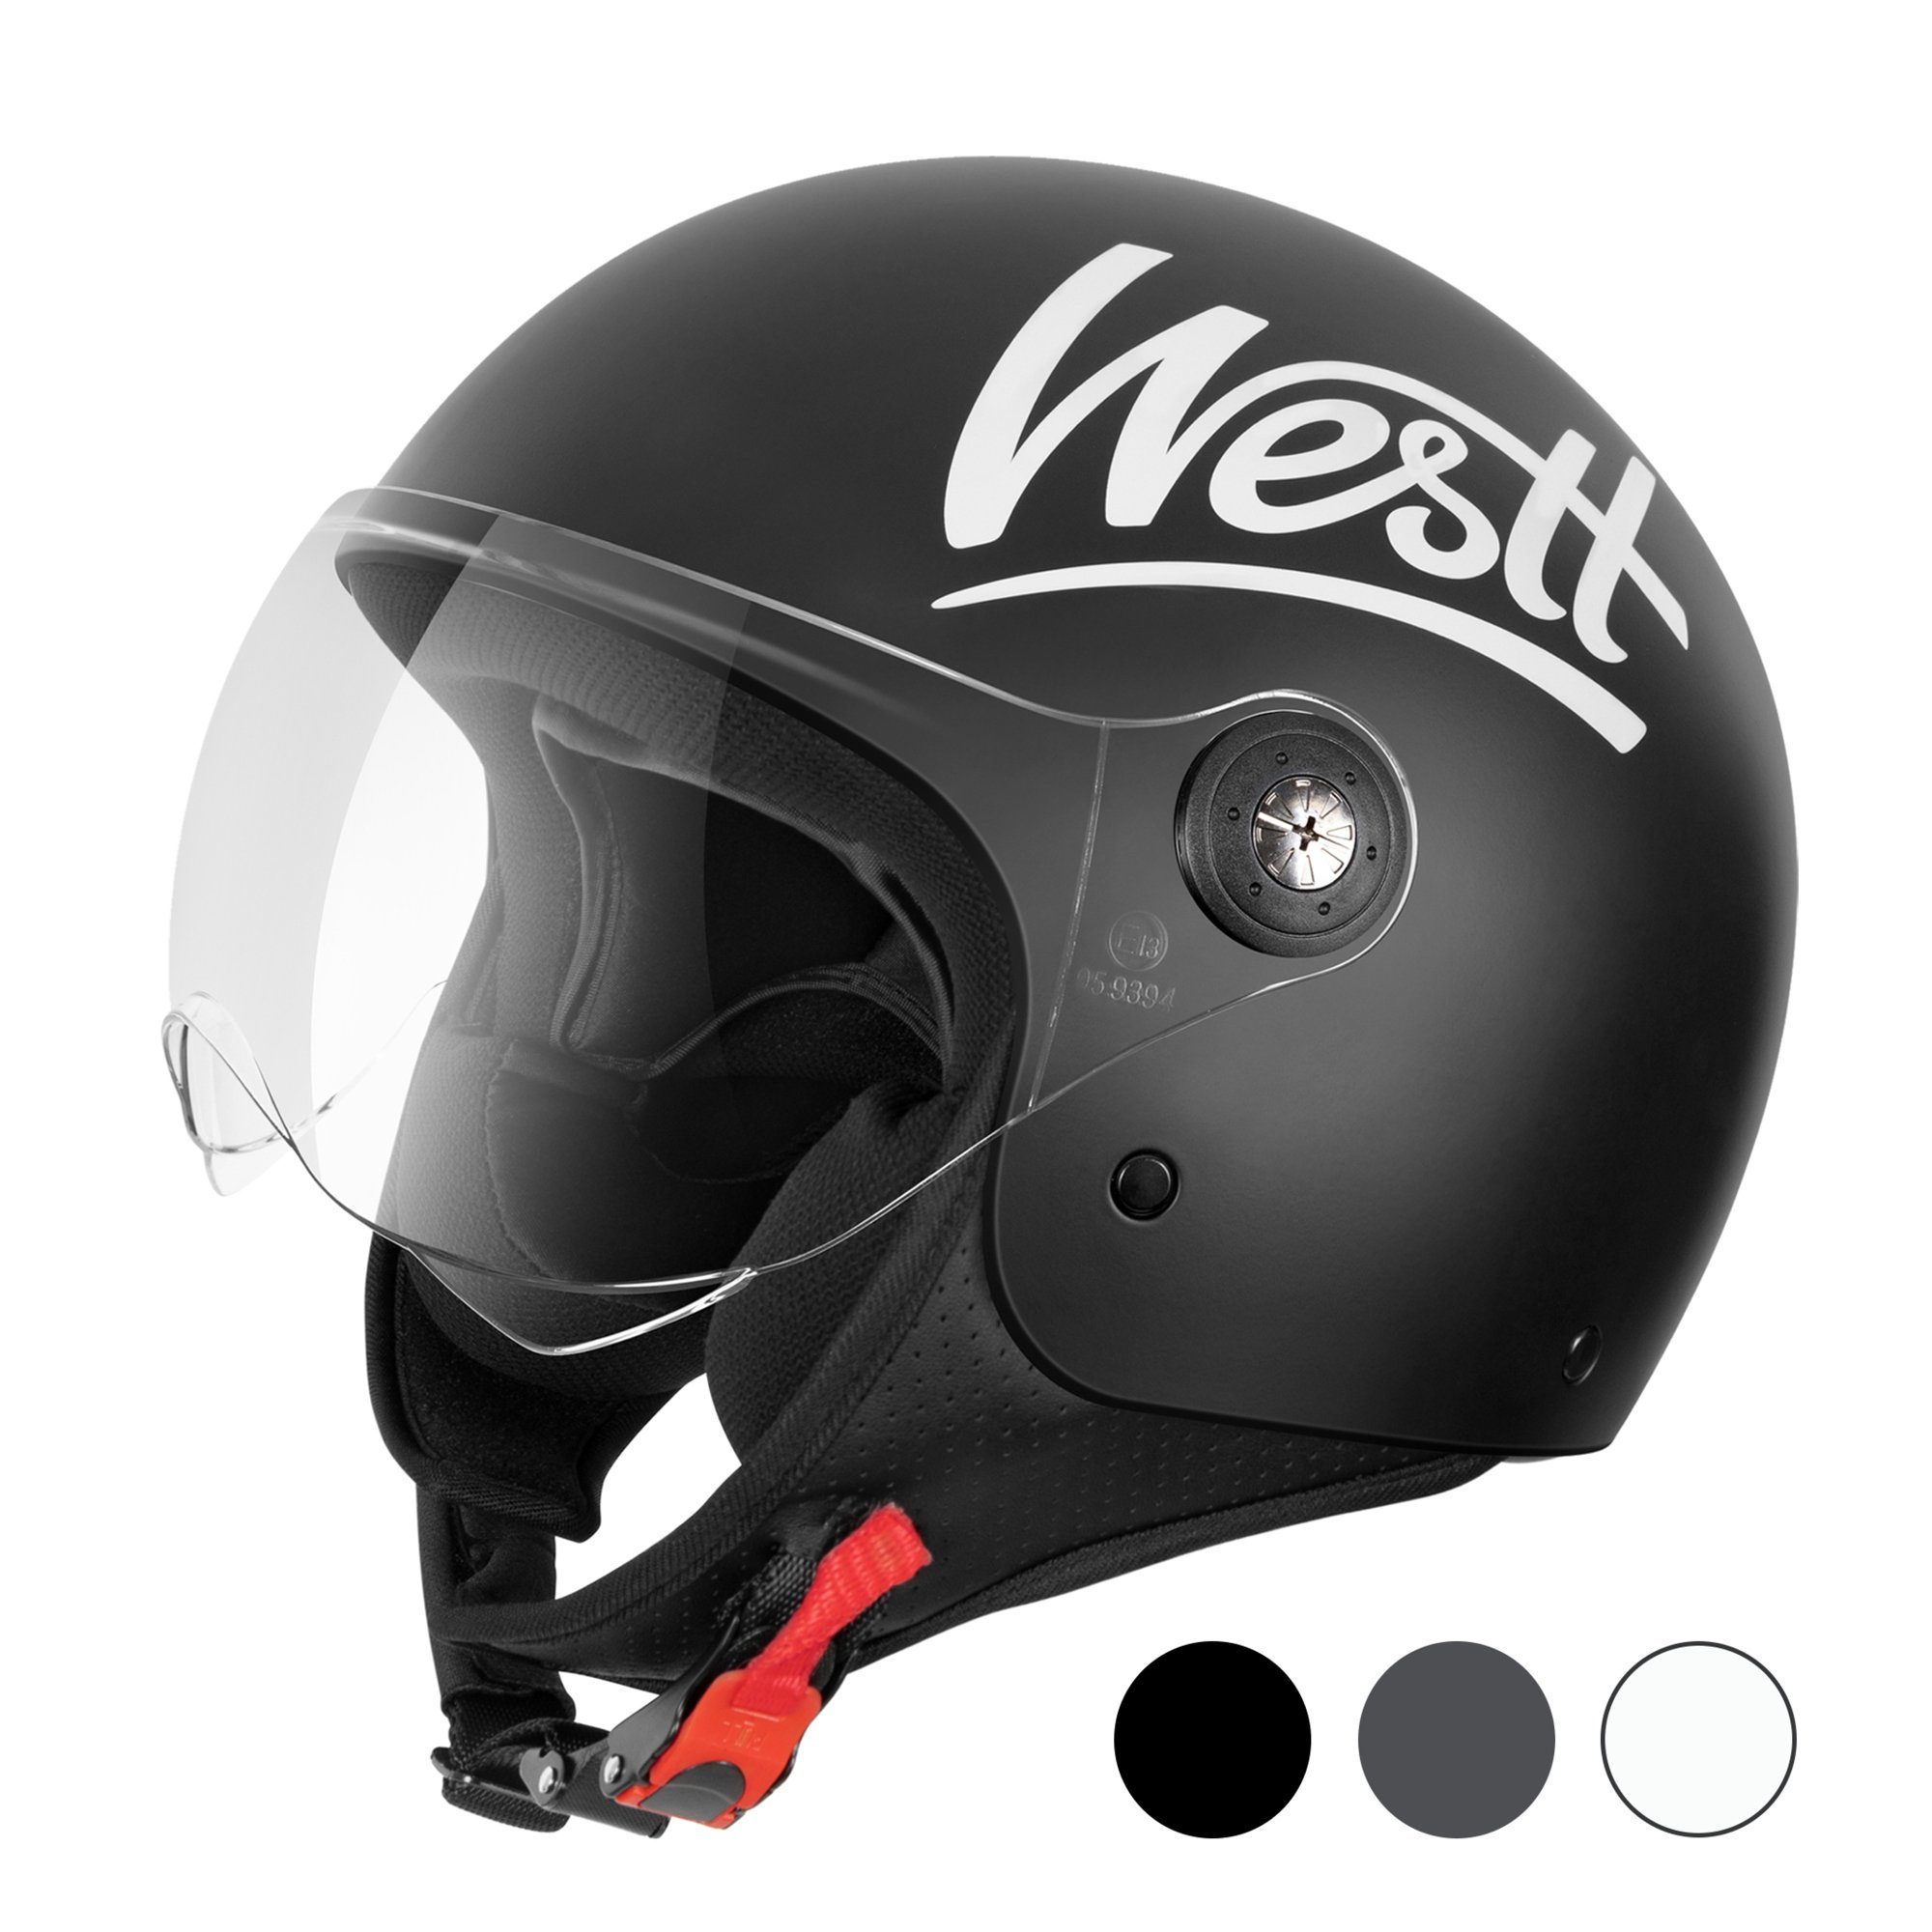 Westt Motorradhelm Classic, Rollerhelm mit Visier im Vintage Stil - Jet  Helm mit hoher Sicherheit